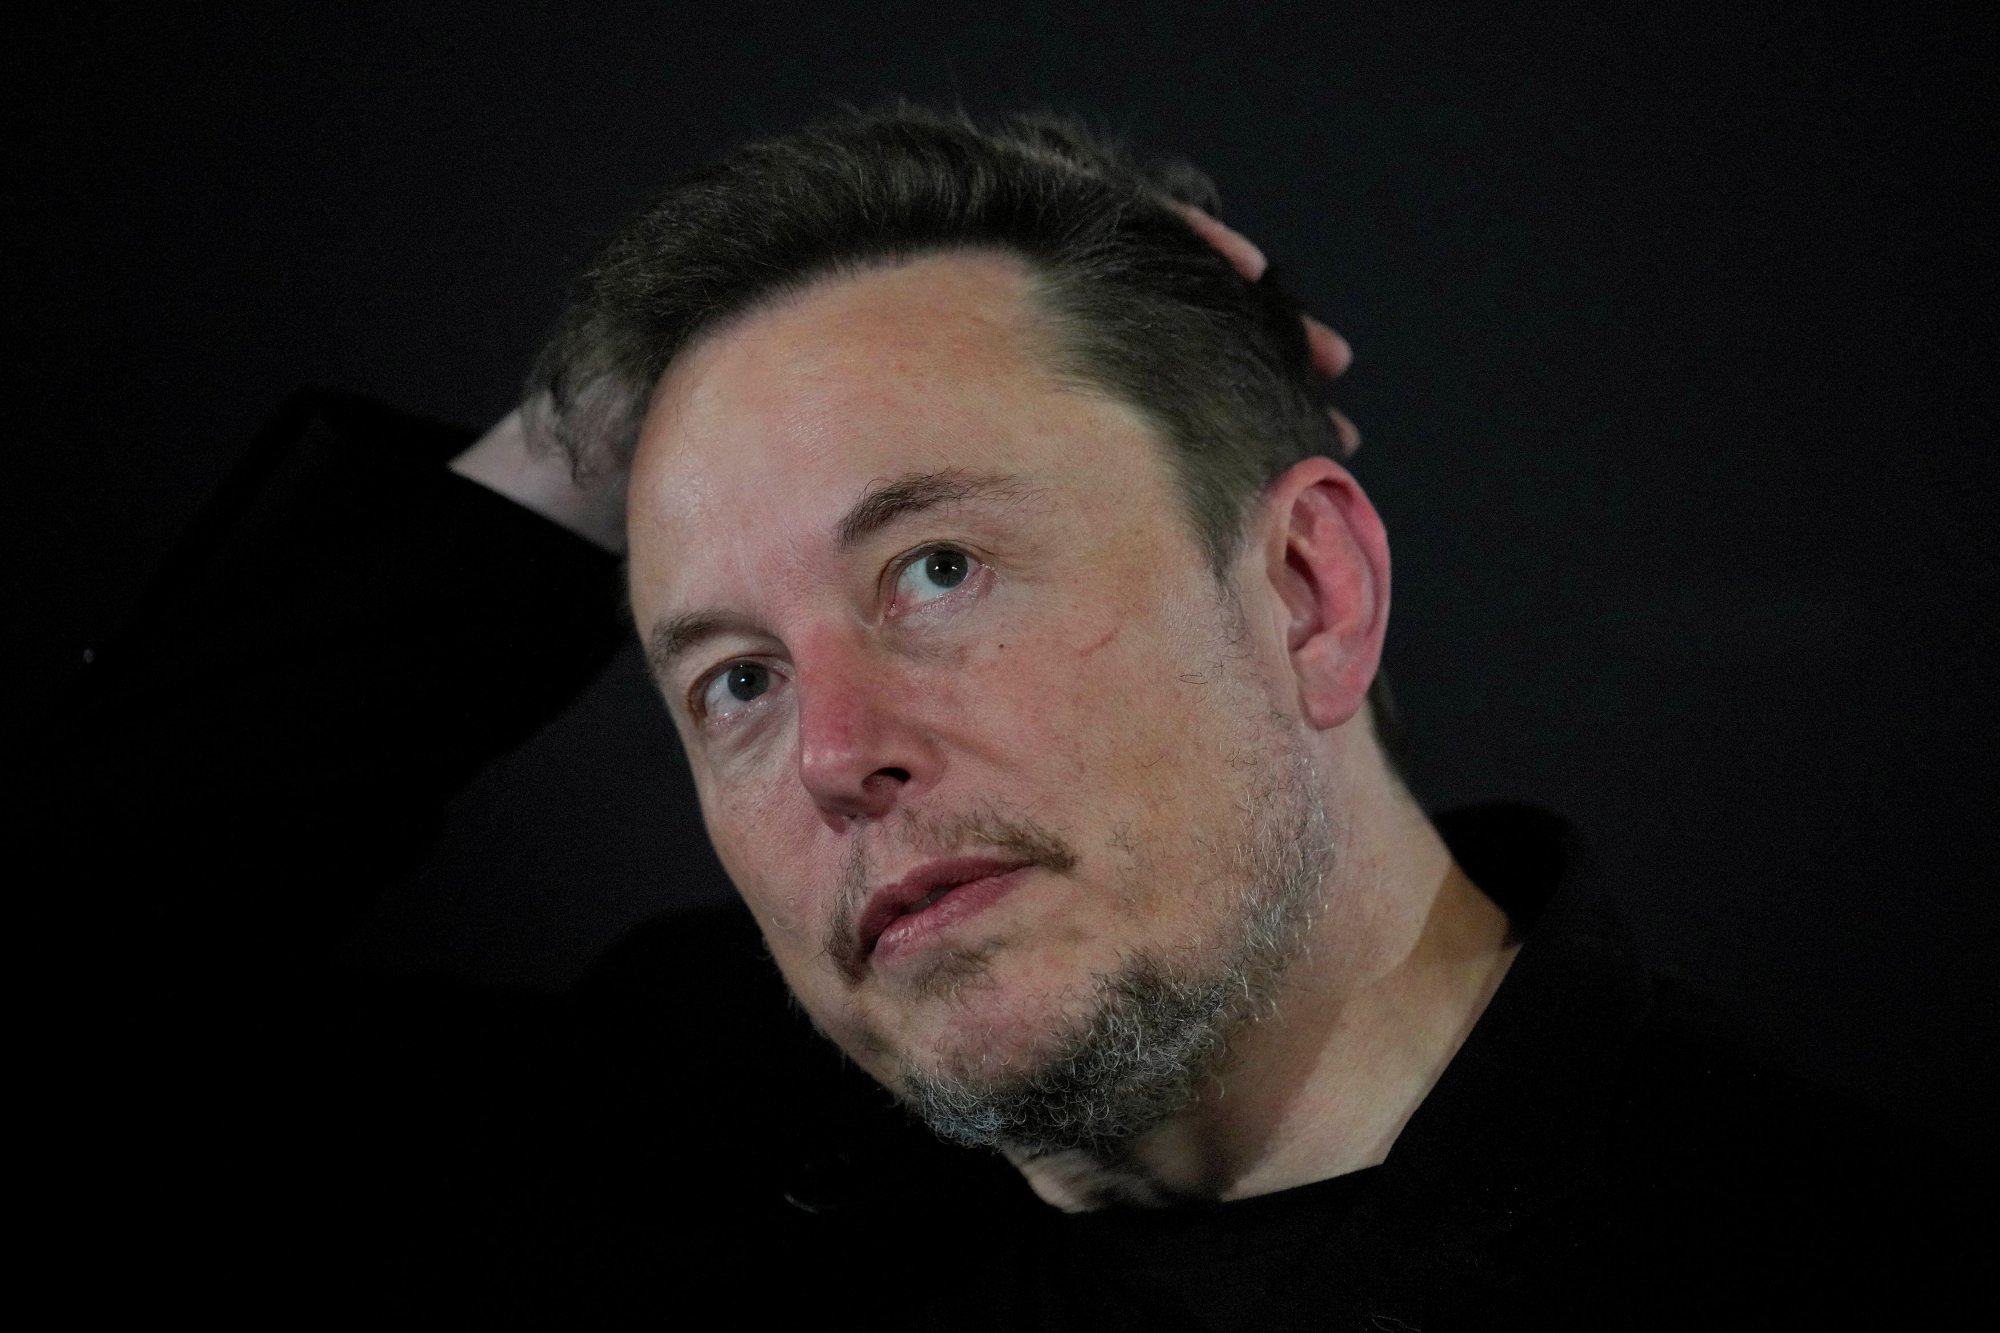 Έλον Μασκ: Παίρνει ναρκωτικά, ανησυχούν στελέχη σε Tesla και SpaceX